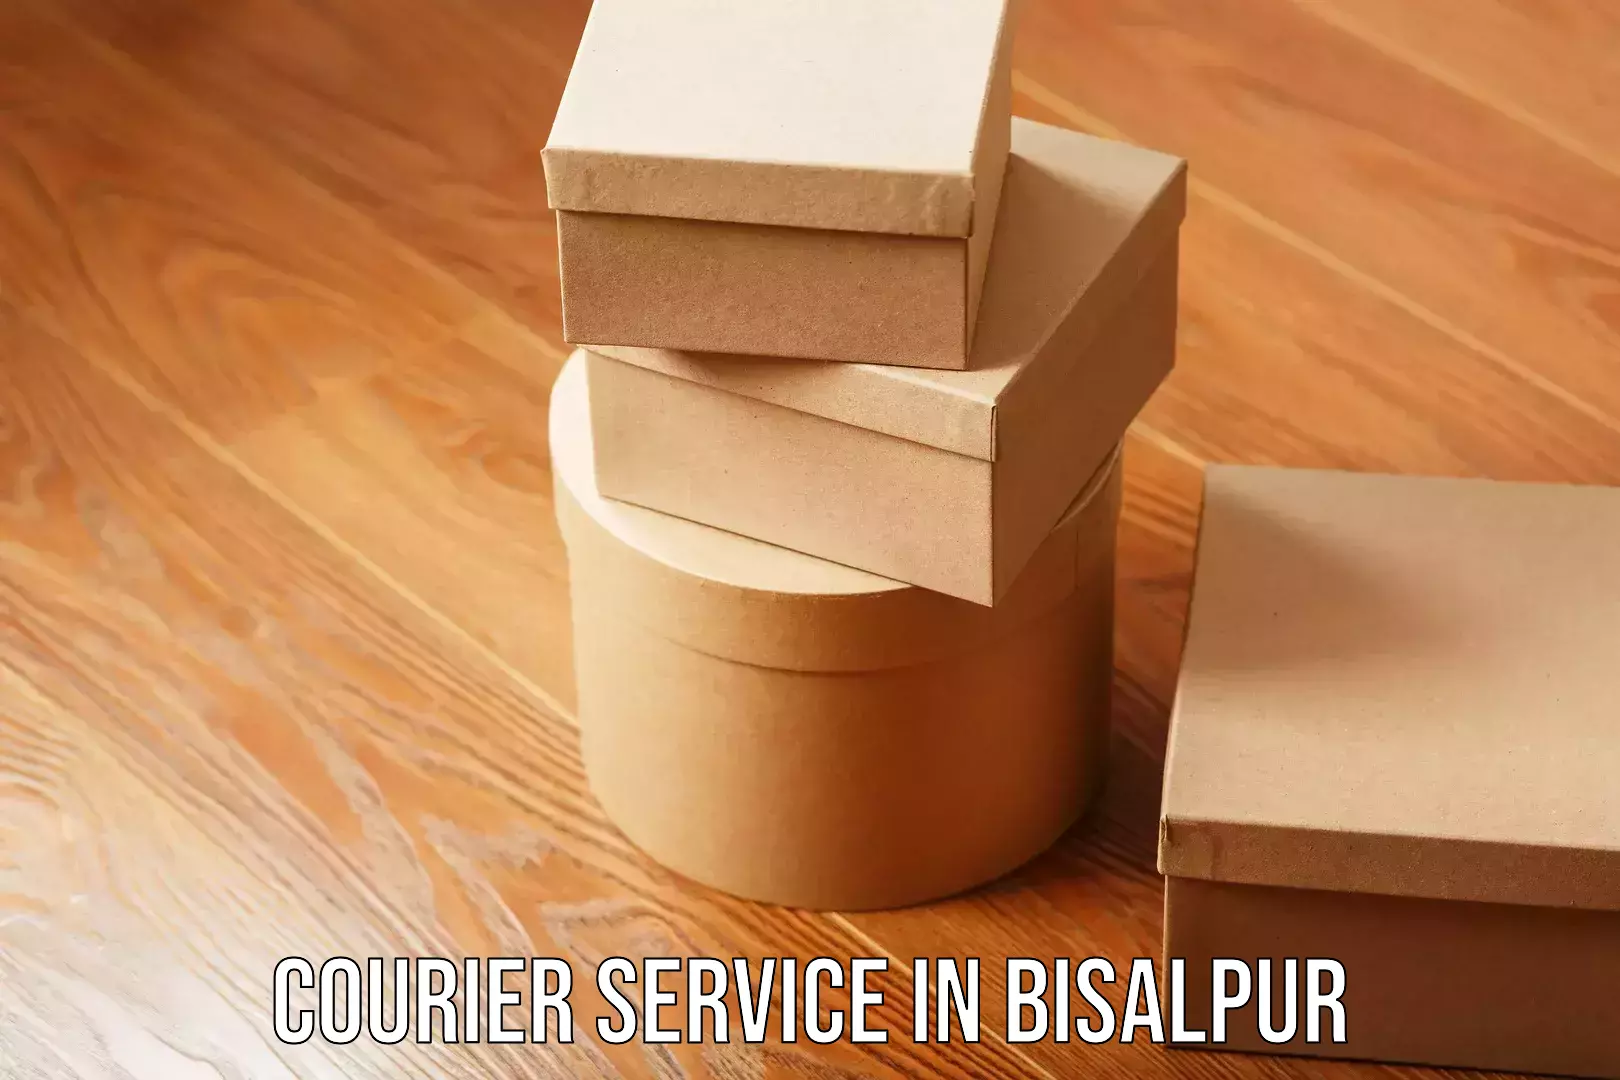 Urban courier service in Bisalpur